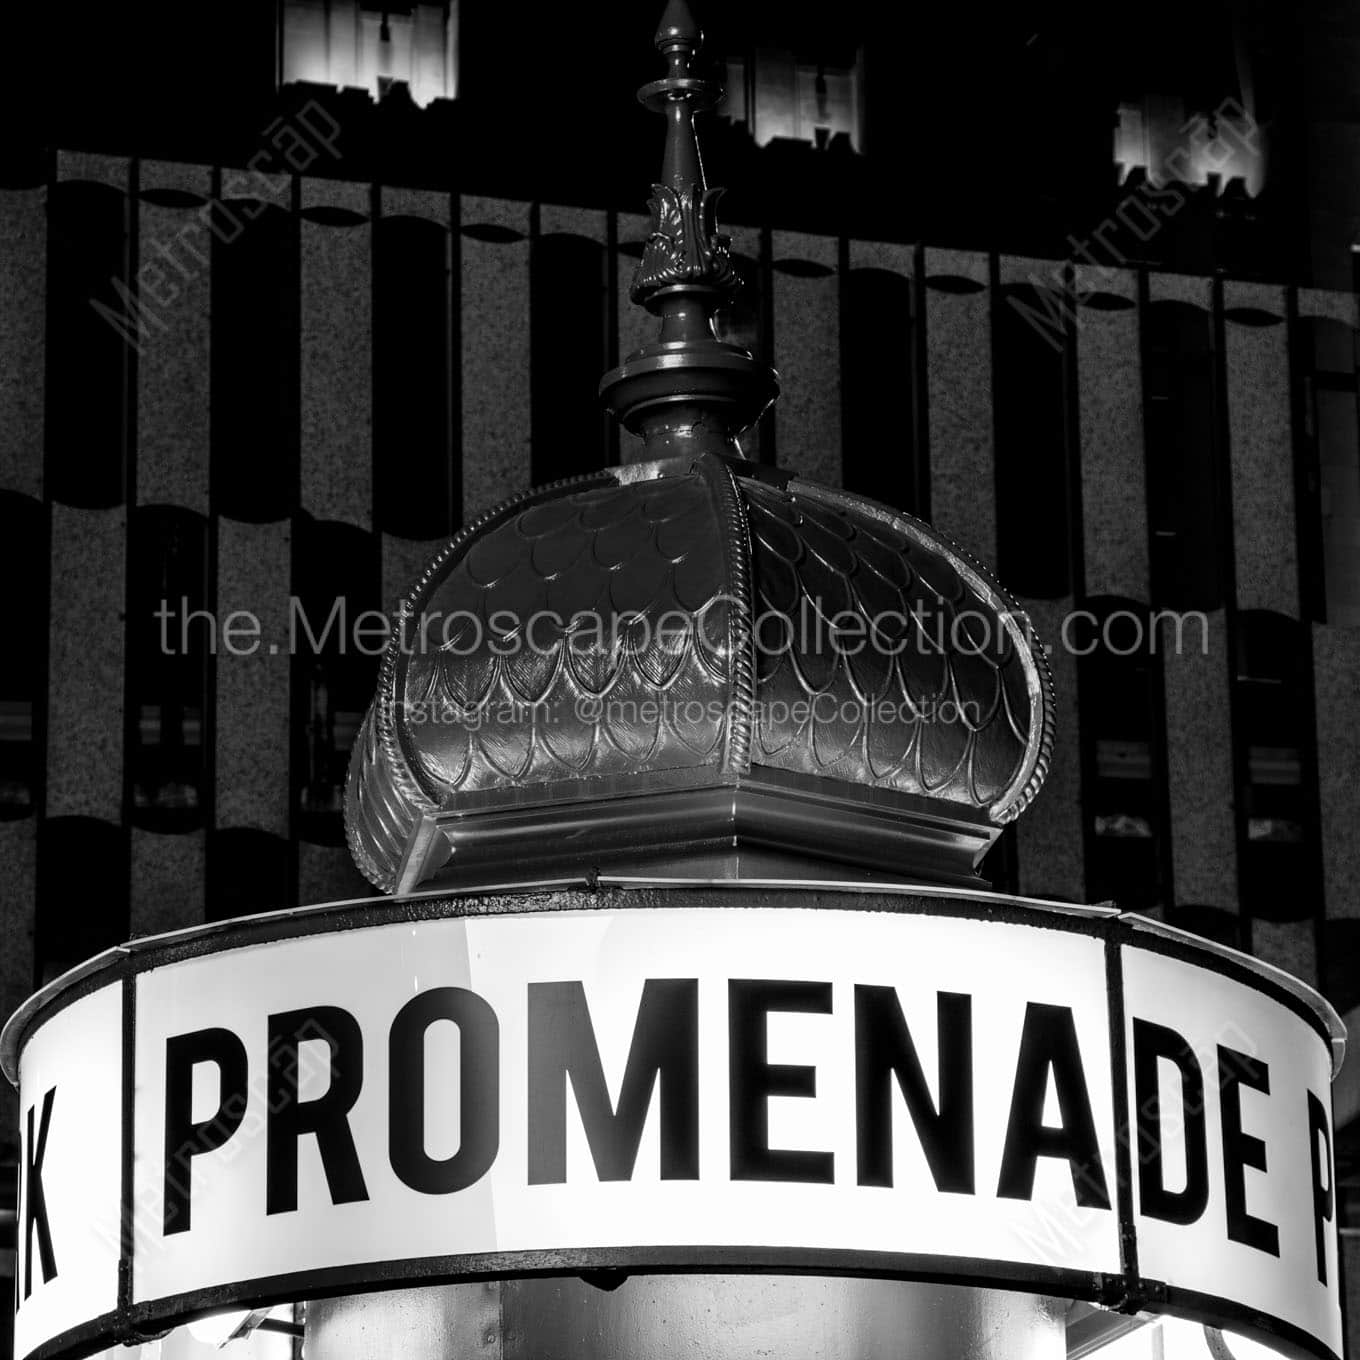 promenade park kiosk Black & White Office Art